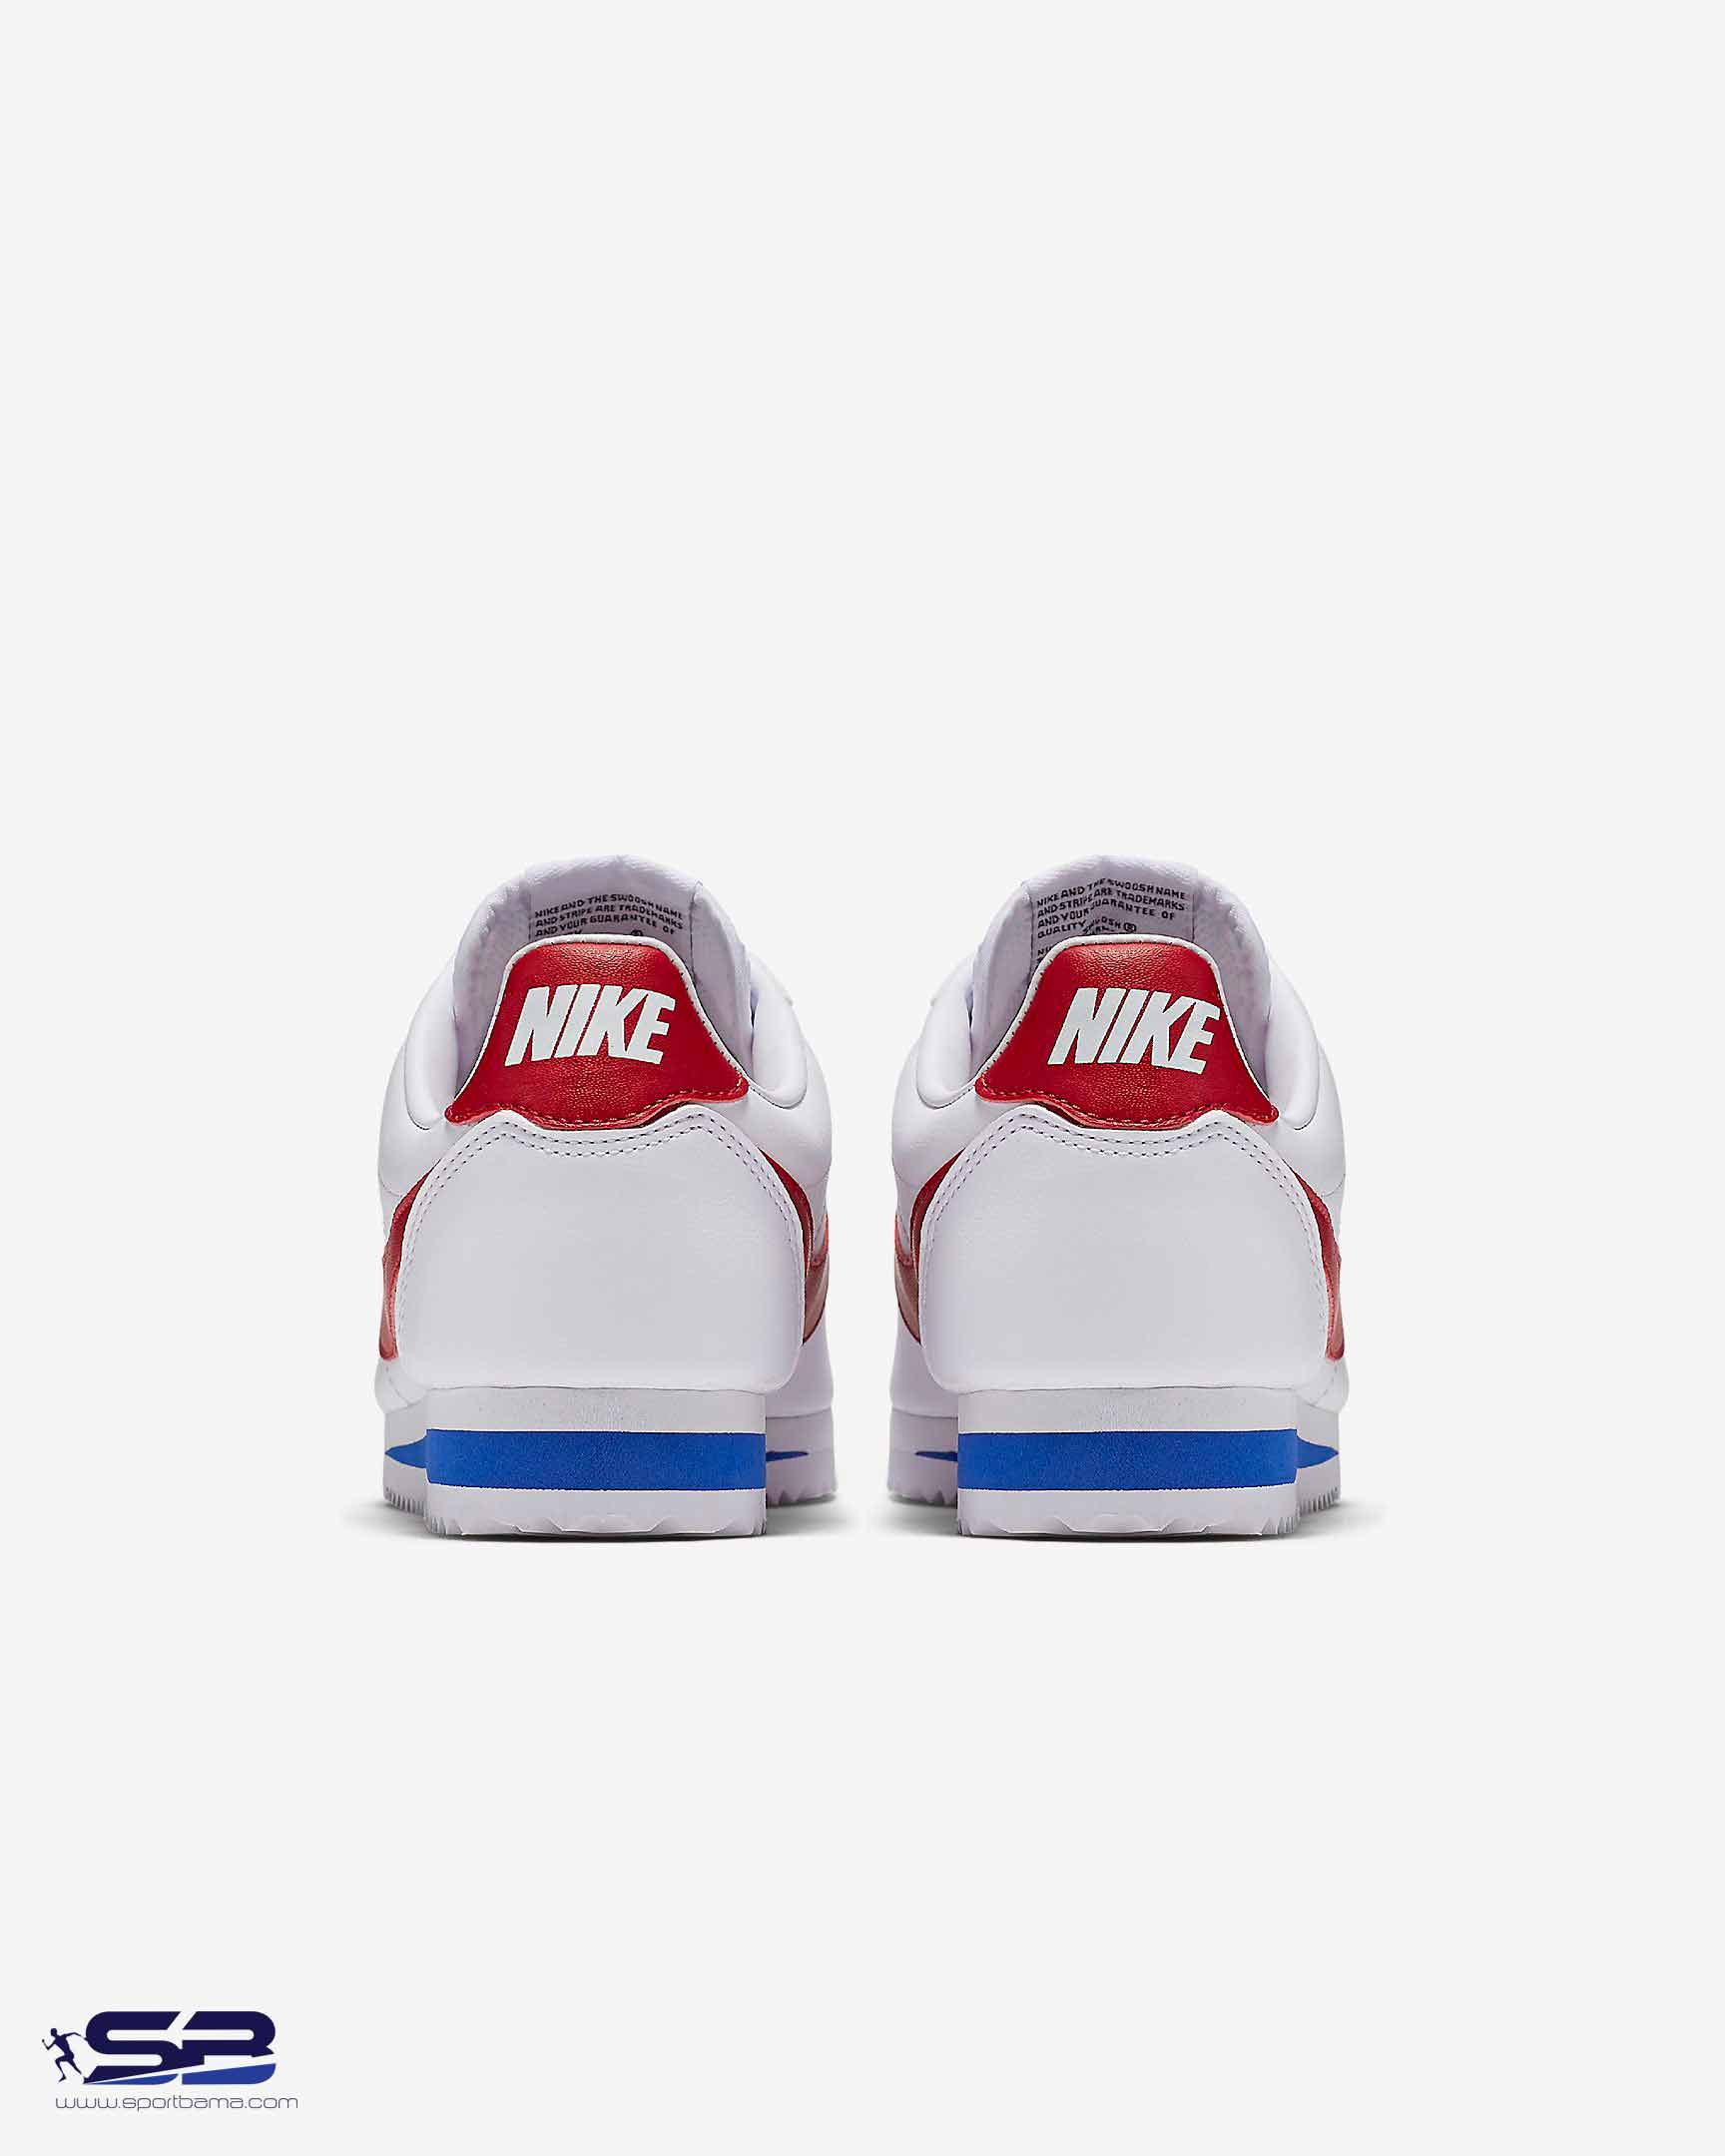  خرید  کفش کتانی رانینگ نایک کورتز سفید      Nike Cortez White